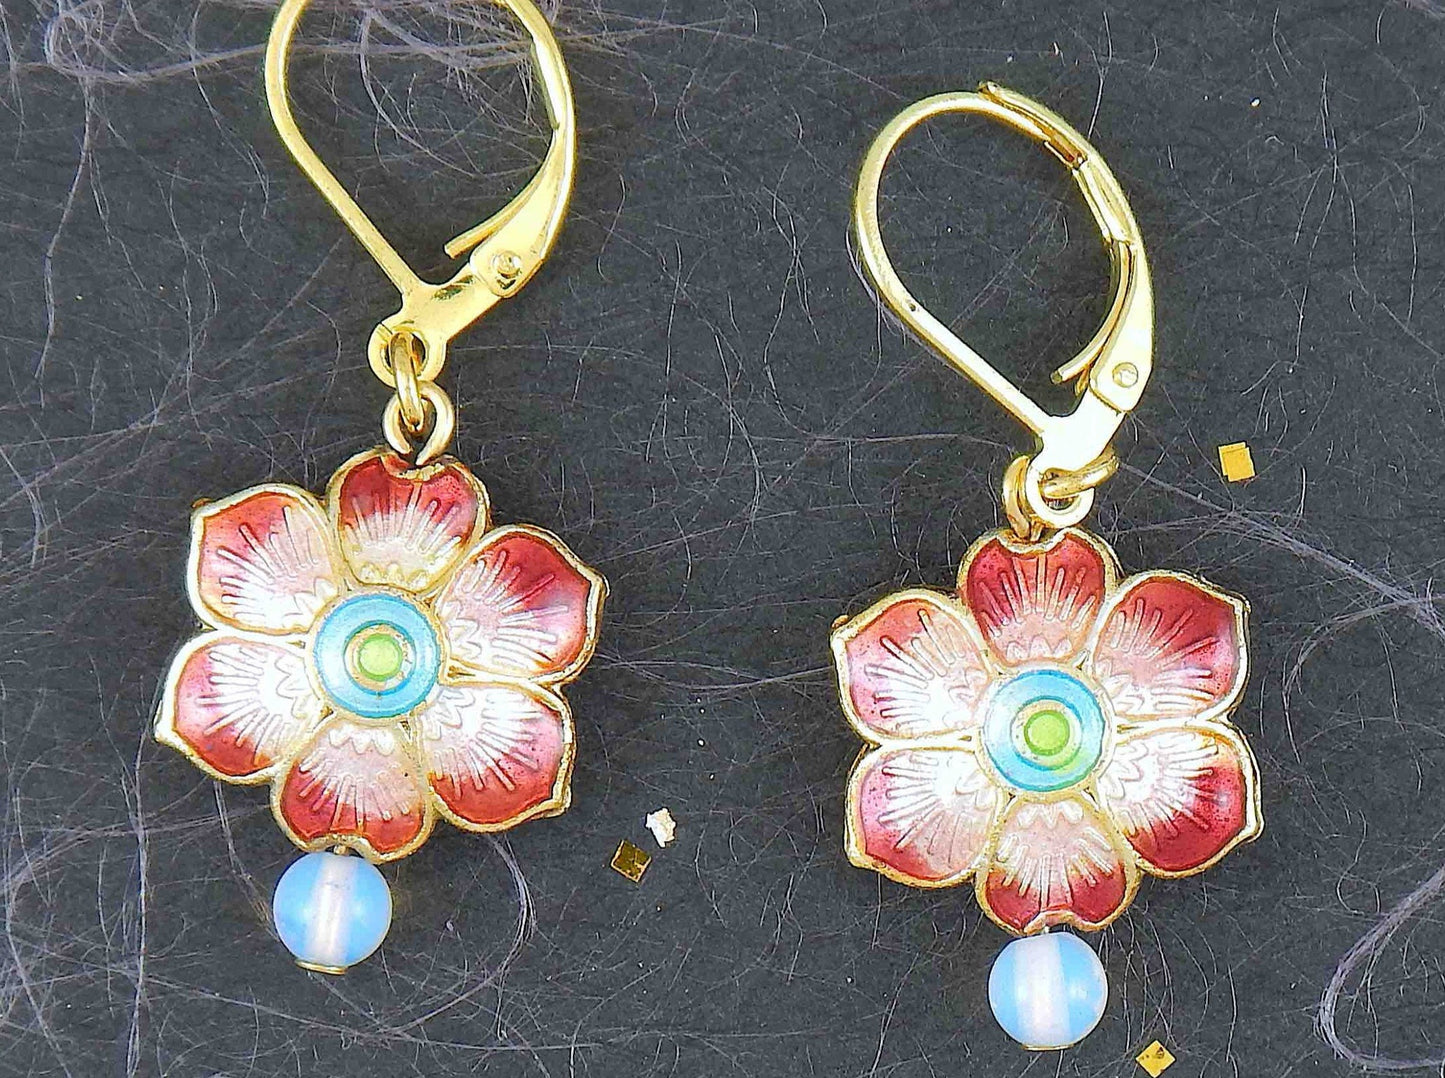 Boucles d'oreilles courtes petites fleurs émaillées offertes en 6 couleurs, pierre de lune synthétique (opalite), crochets à levier acier inoxydable doré